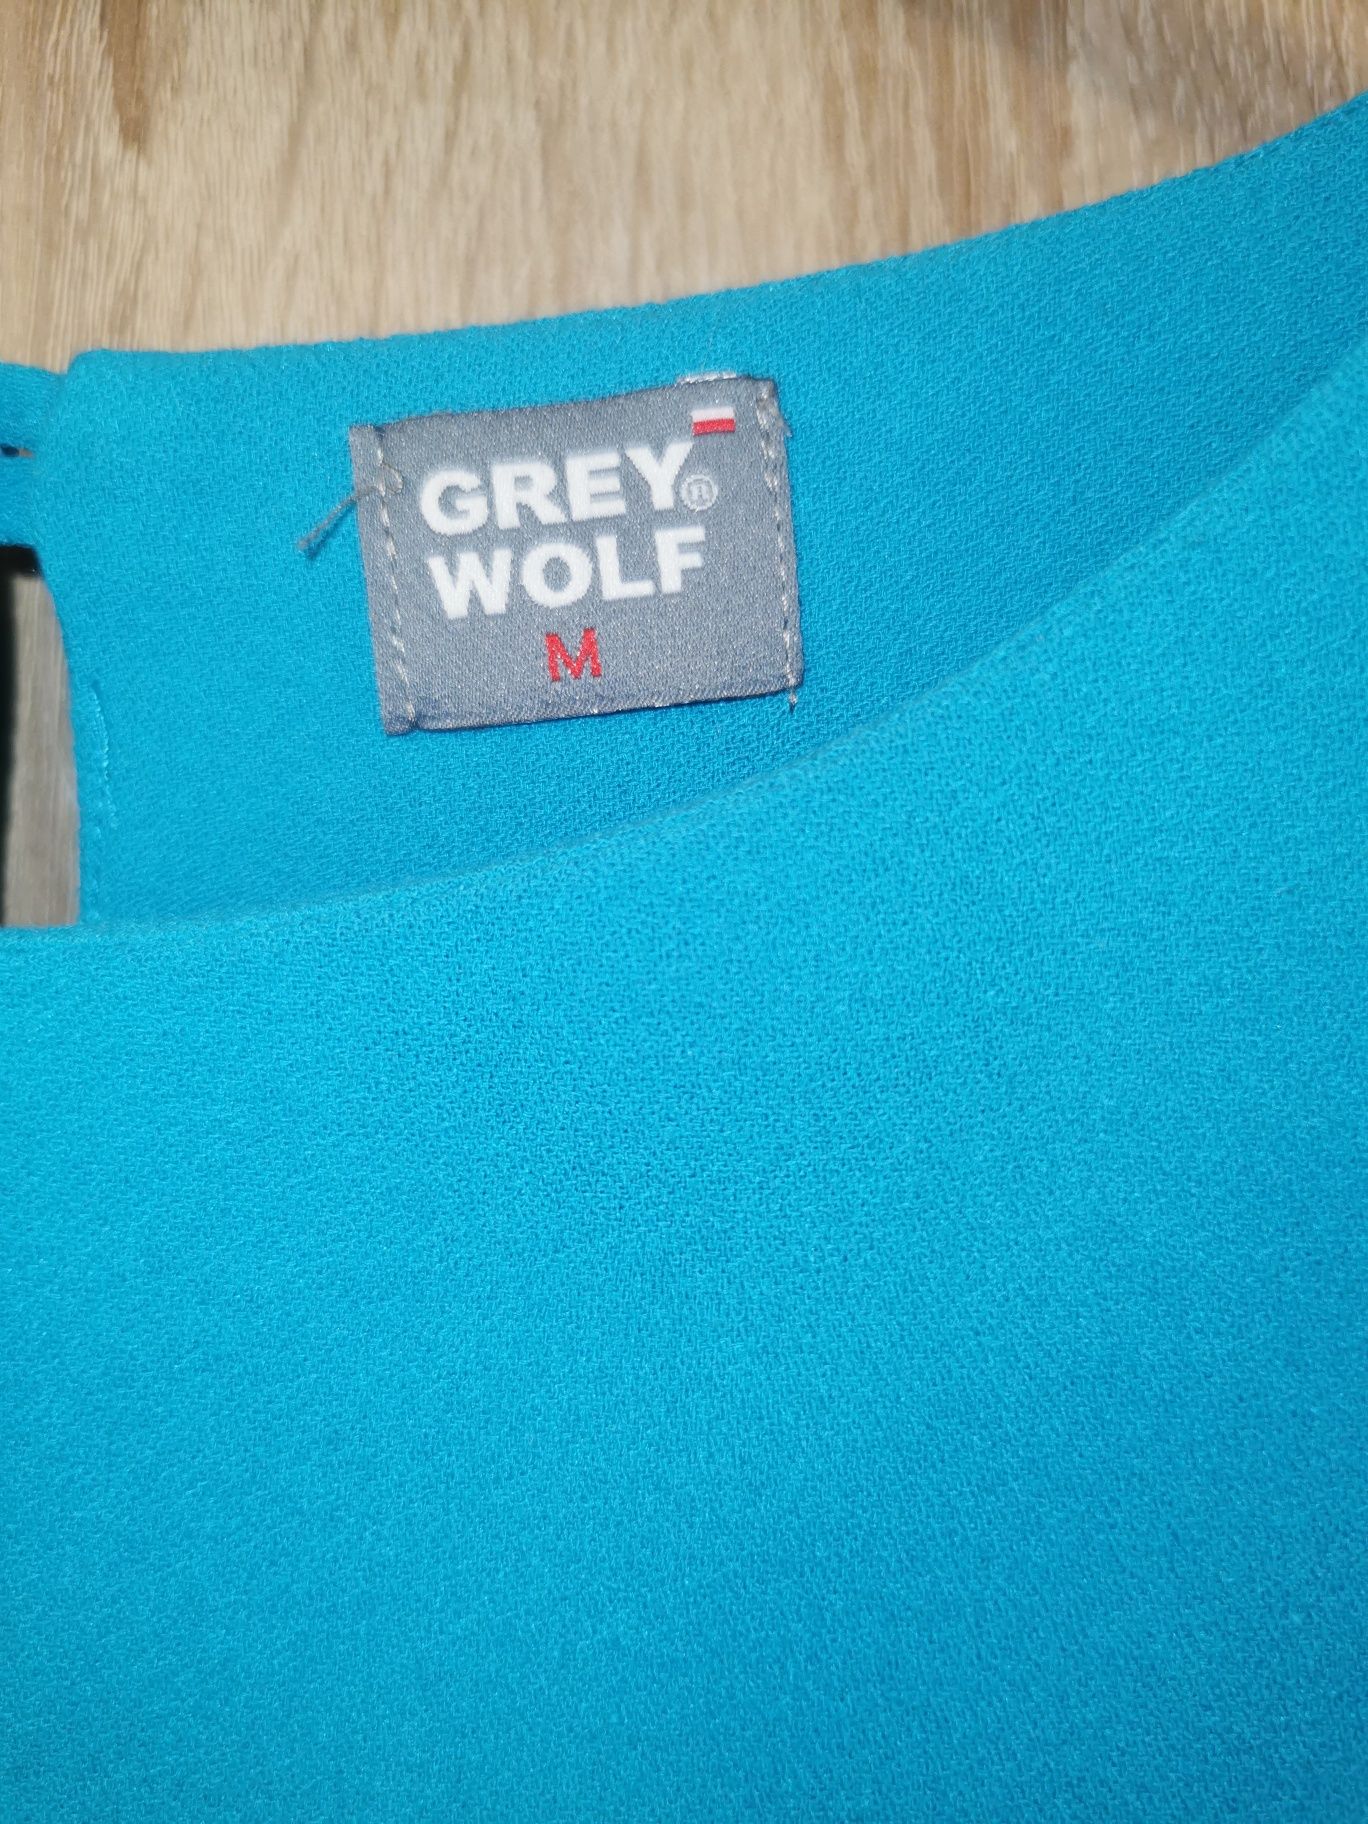 Sukienki Grey Wolf, 2 szt. rozmiar M 38/40 cena za całość